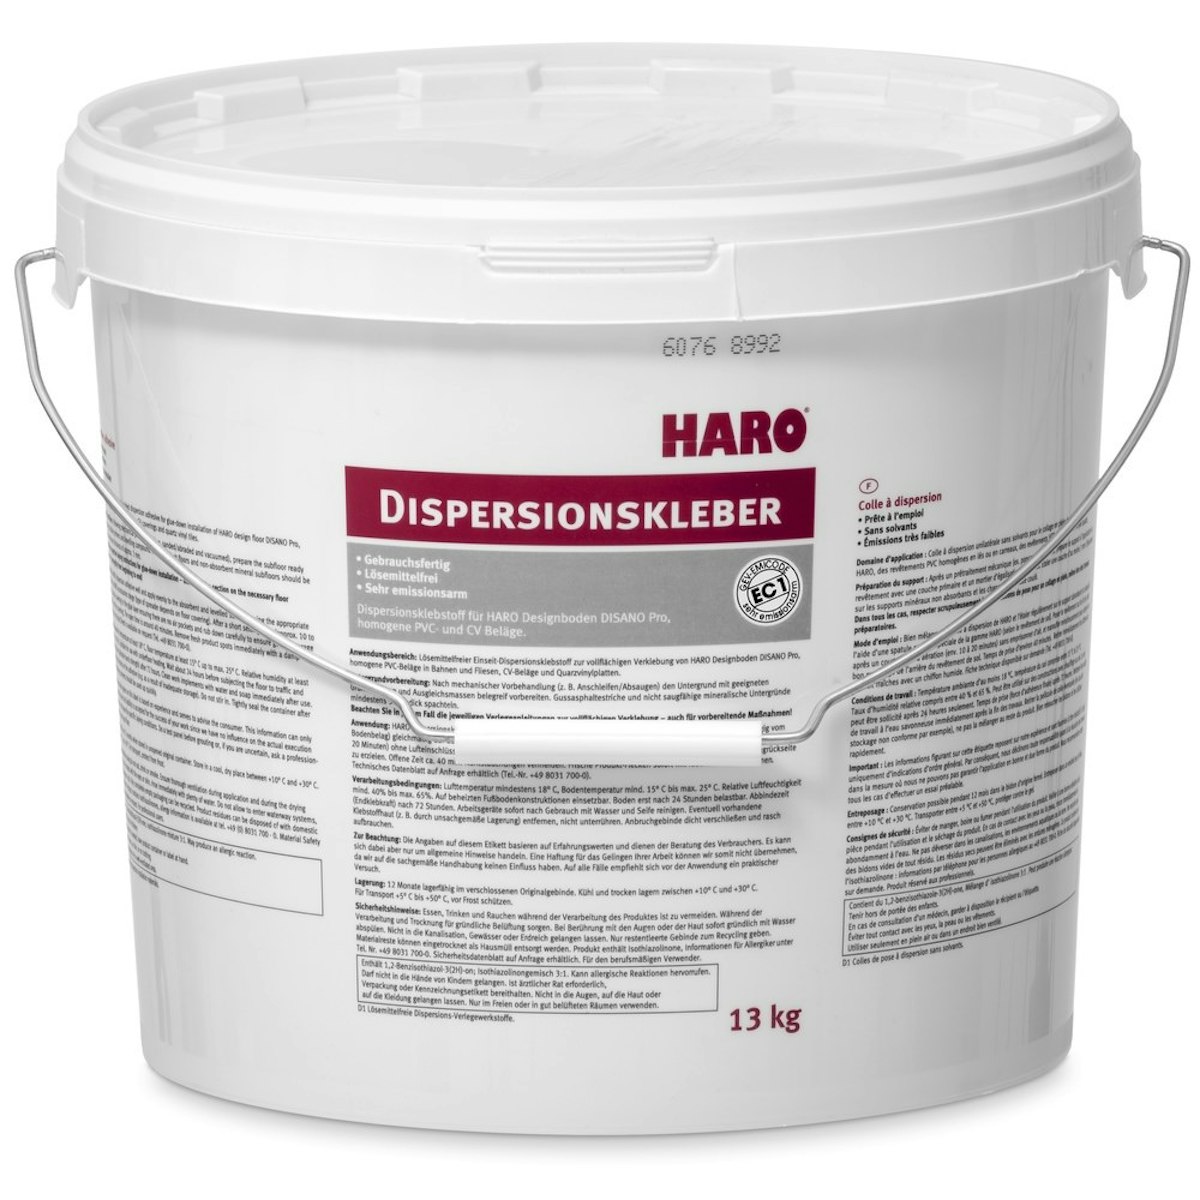 HARO Dispersionskleber 14 kg für DISANO Project von HARO